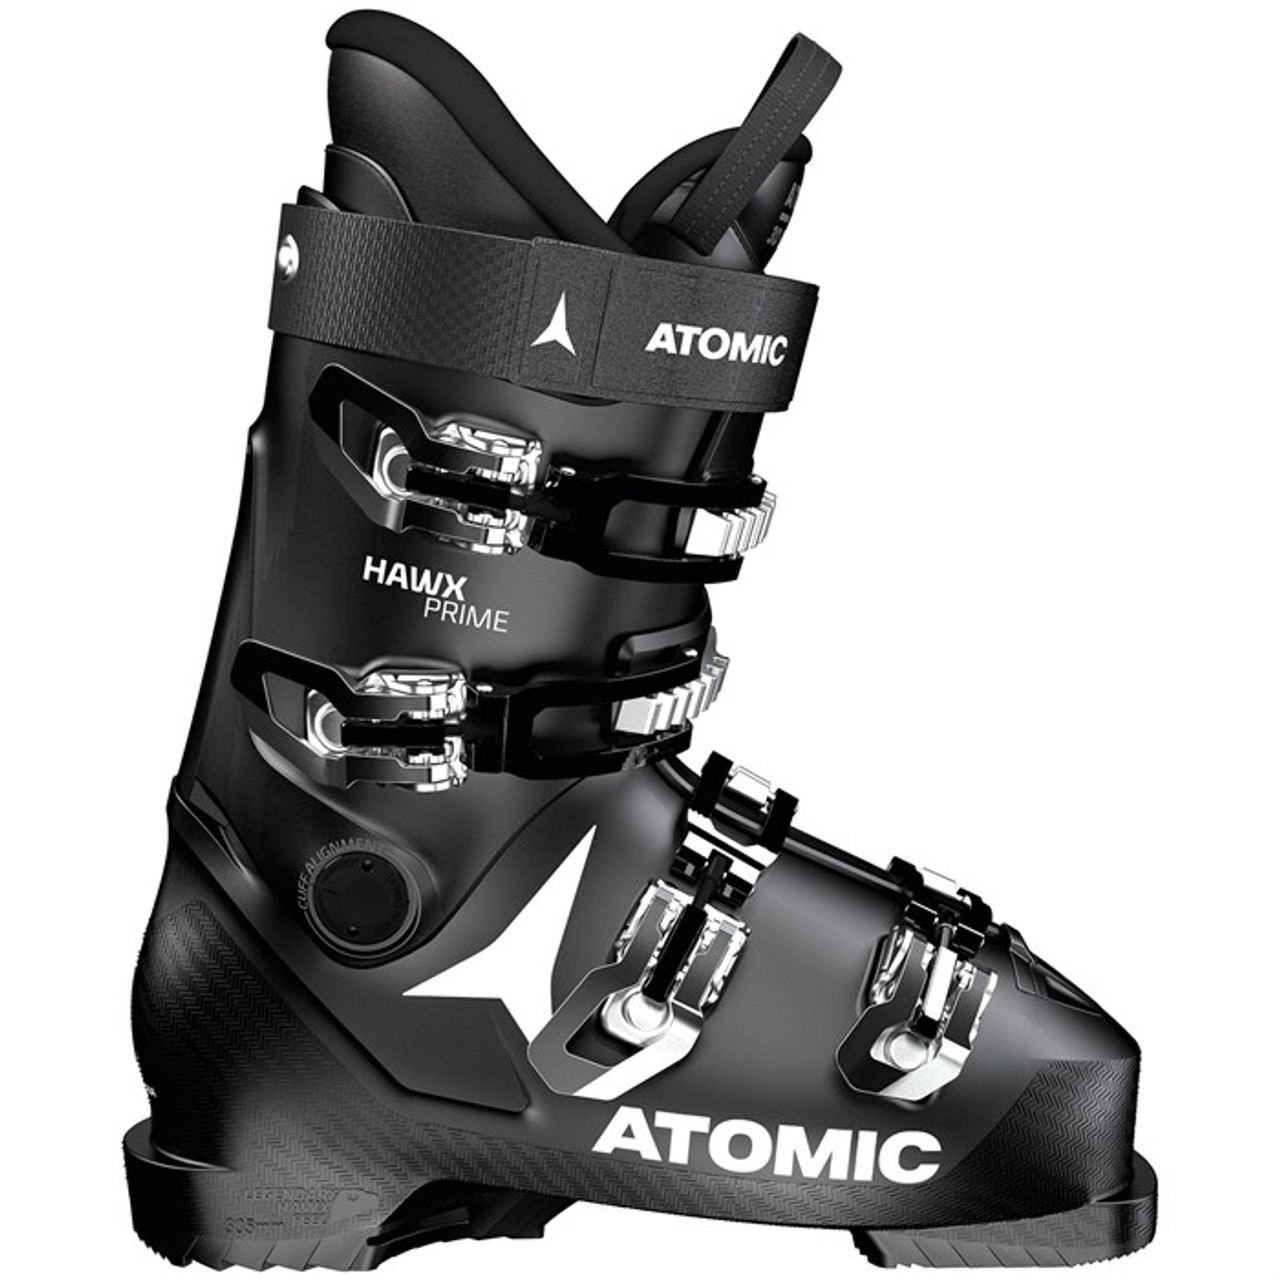 Atomic Hawx Prime Ski - Black/White - 30/30.5 12/12.5 CBS Boardshop